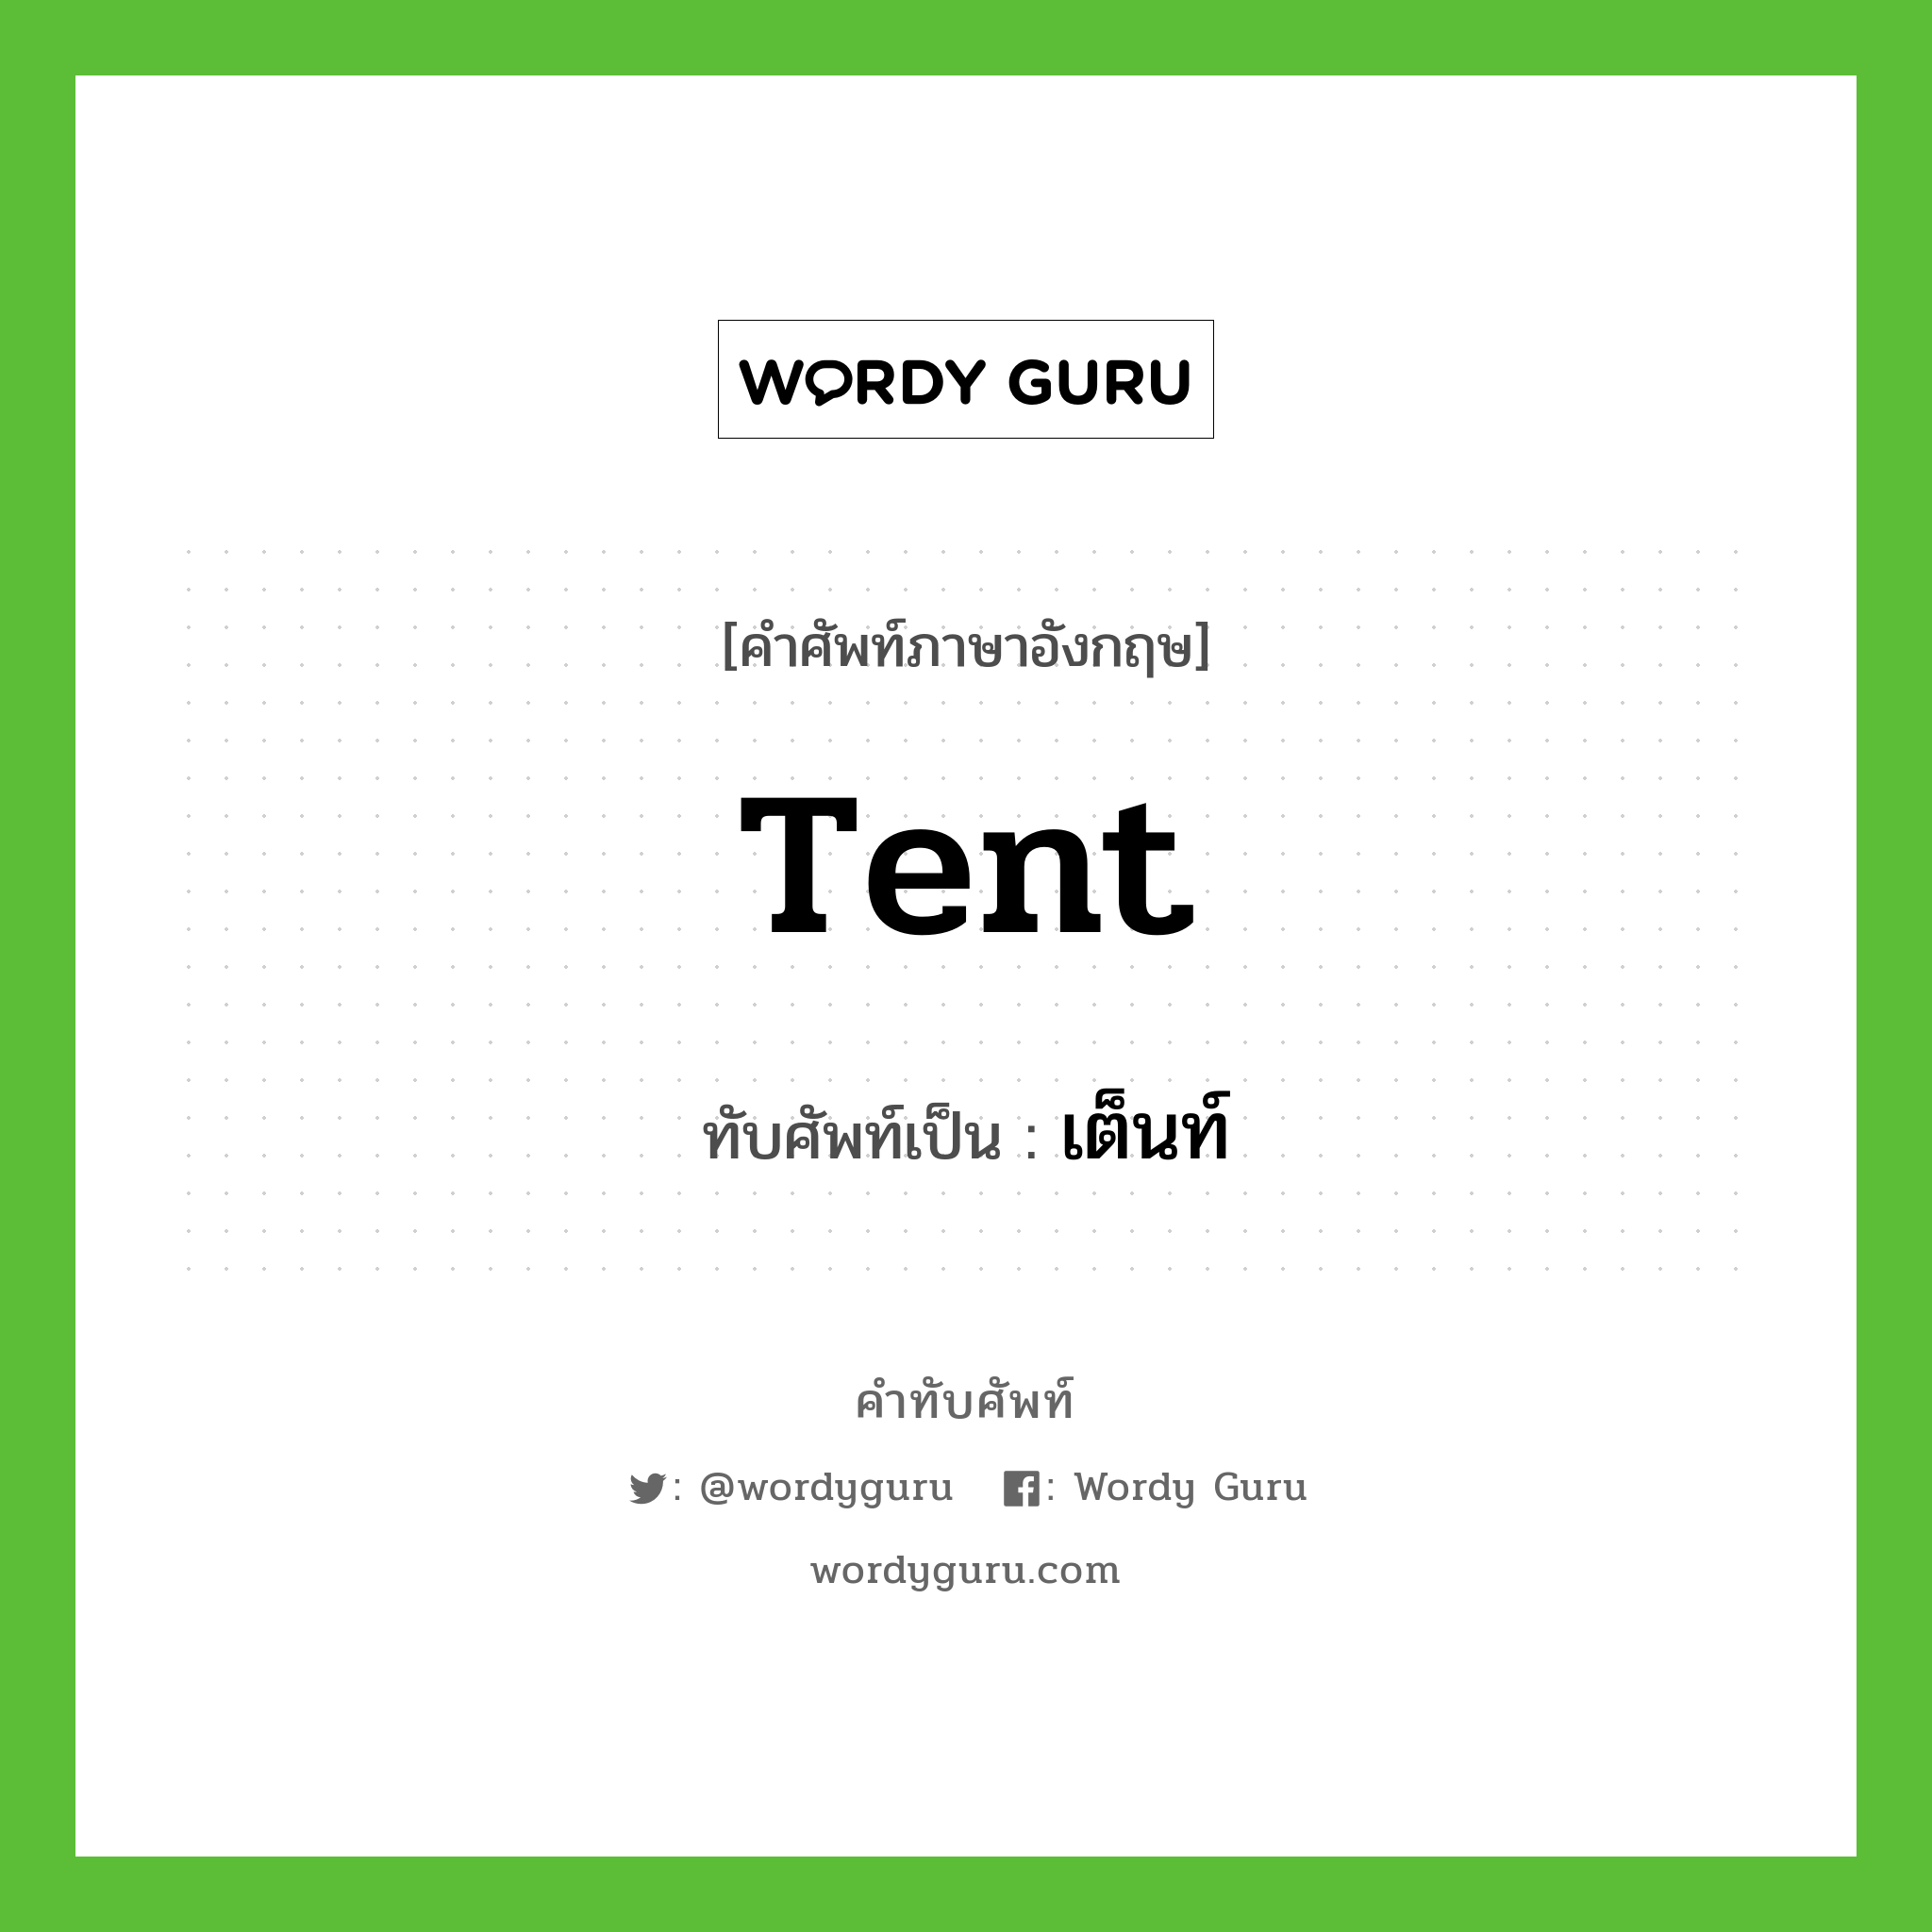 tent เขียนเป็นคำไทยว่าอะไร?, คำศัพท์ภาษาอังกฤษ tent ทับศัพท์เป็น เต็นท์